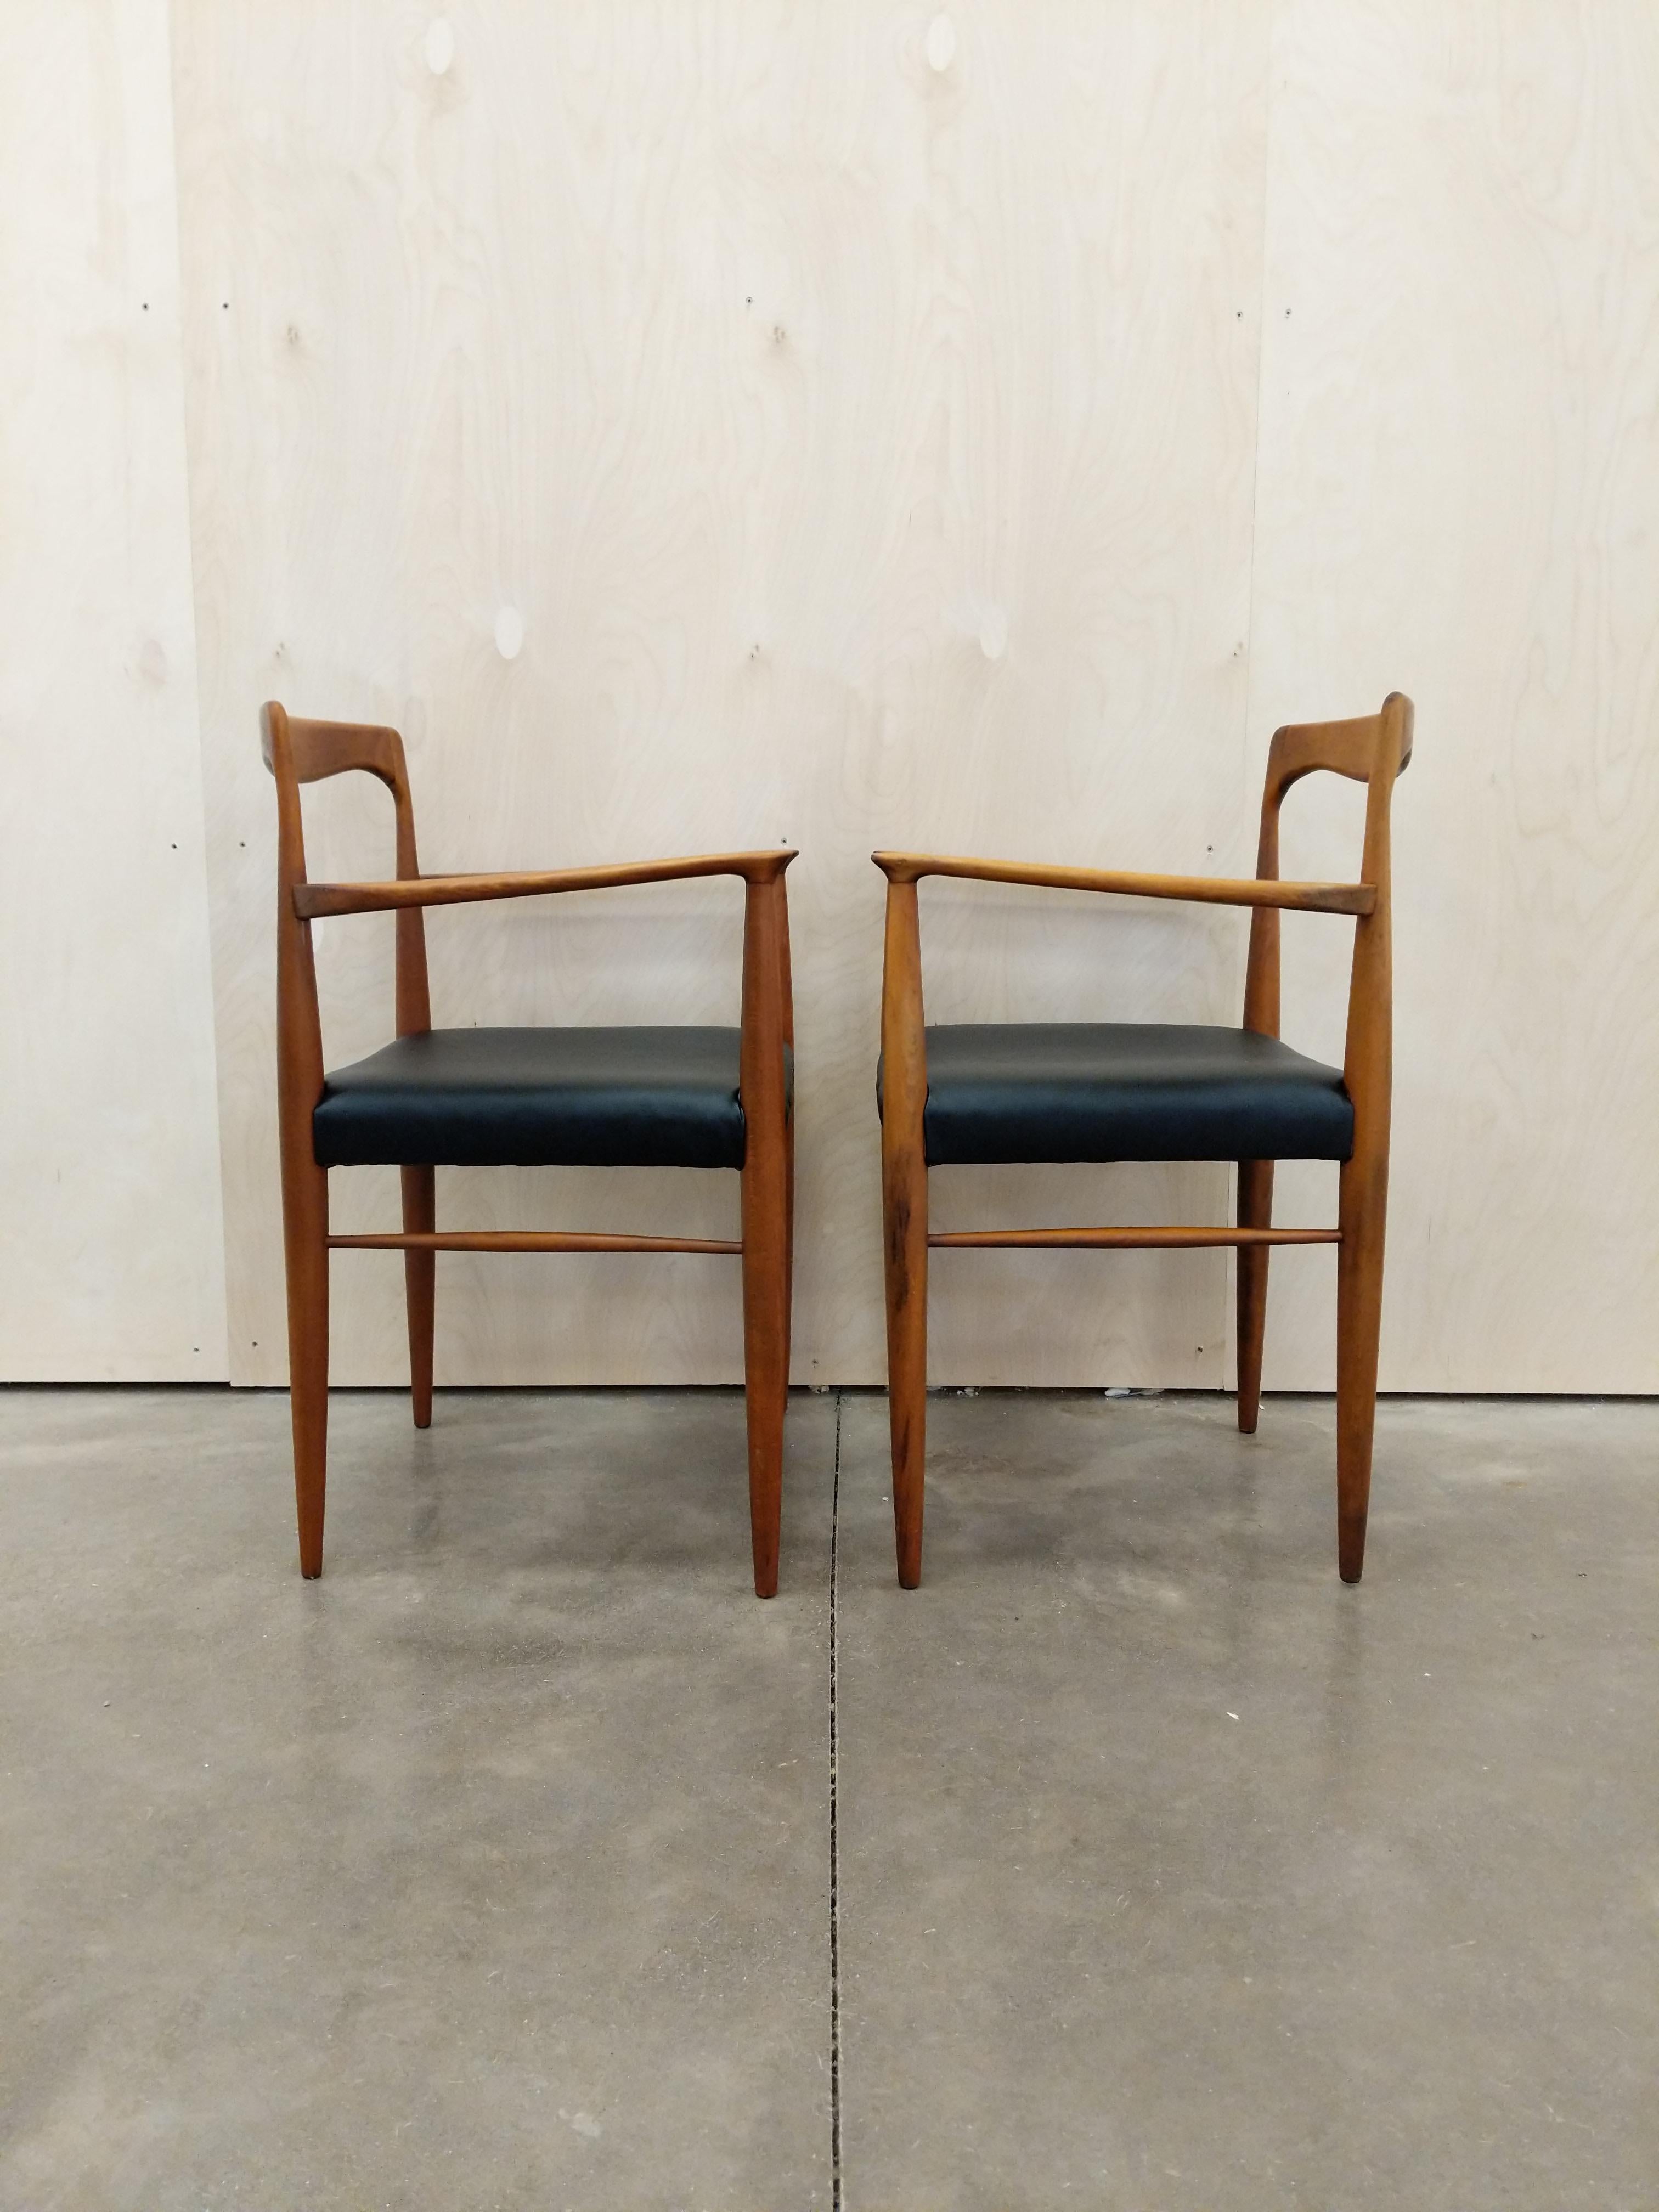 Ein Paar authentische tschechische Sessel aus der Mitte des Jahrhunderts.

Entworfen von Karel Vycital für Drevotvar.

Dieses Set ist in sehr gutem Vintage-Zustand mit neuer Polsterung und wenigen altersbedingten Gebrauchsspuren (siehe Fotos).

Wenn